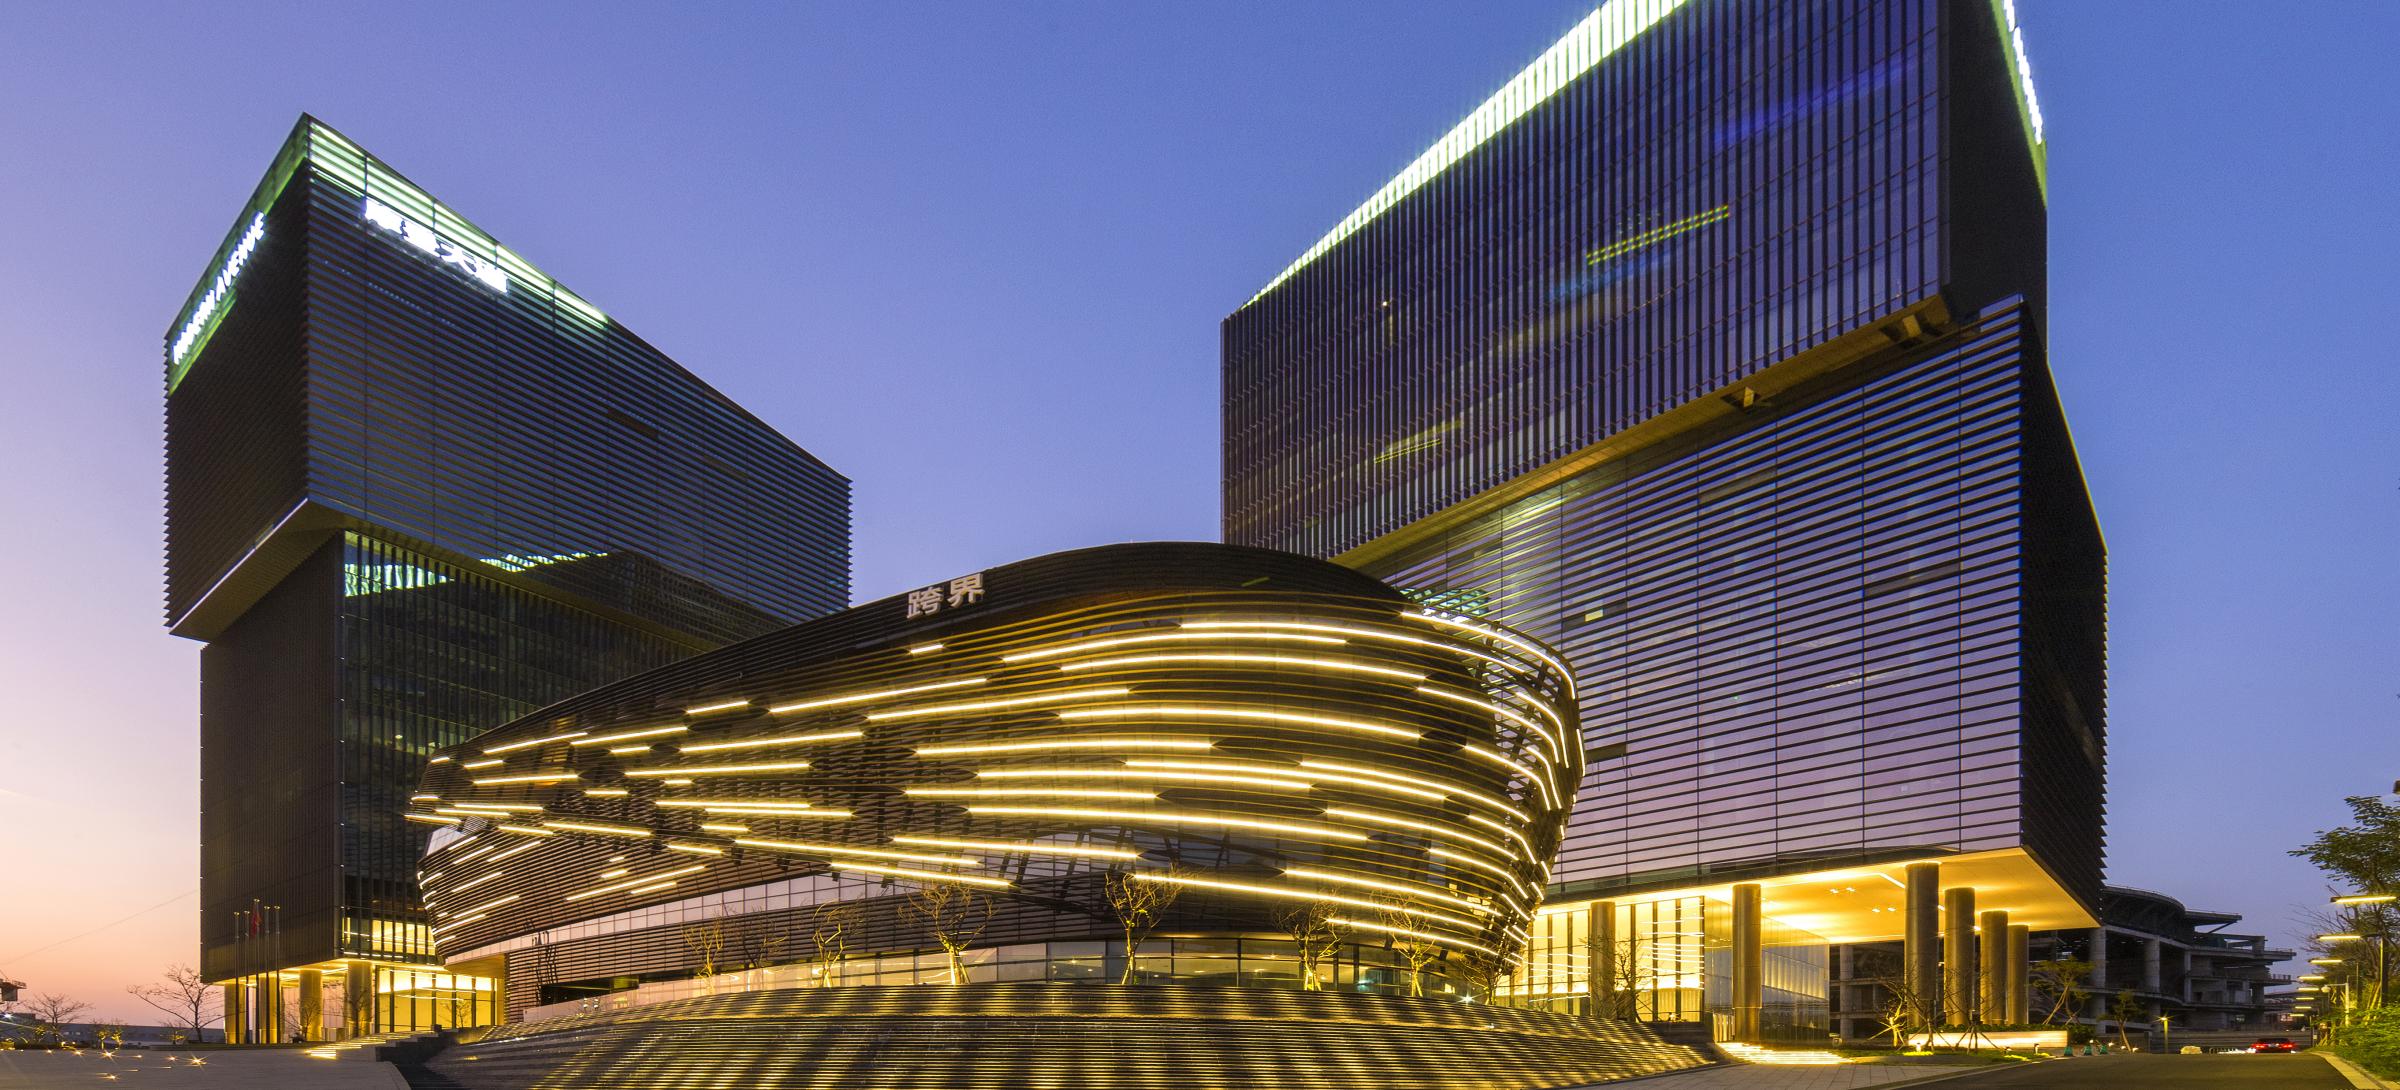 Guangzhou International Fashion Center 